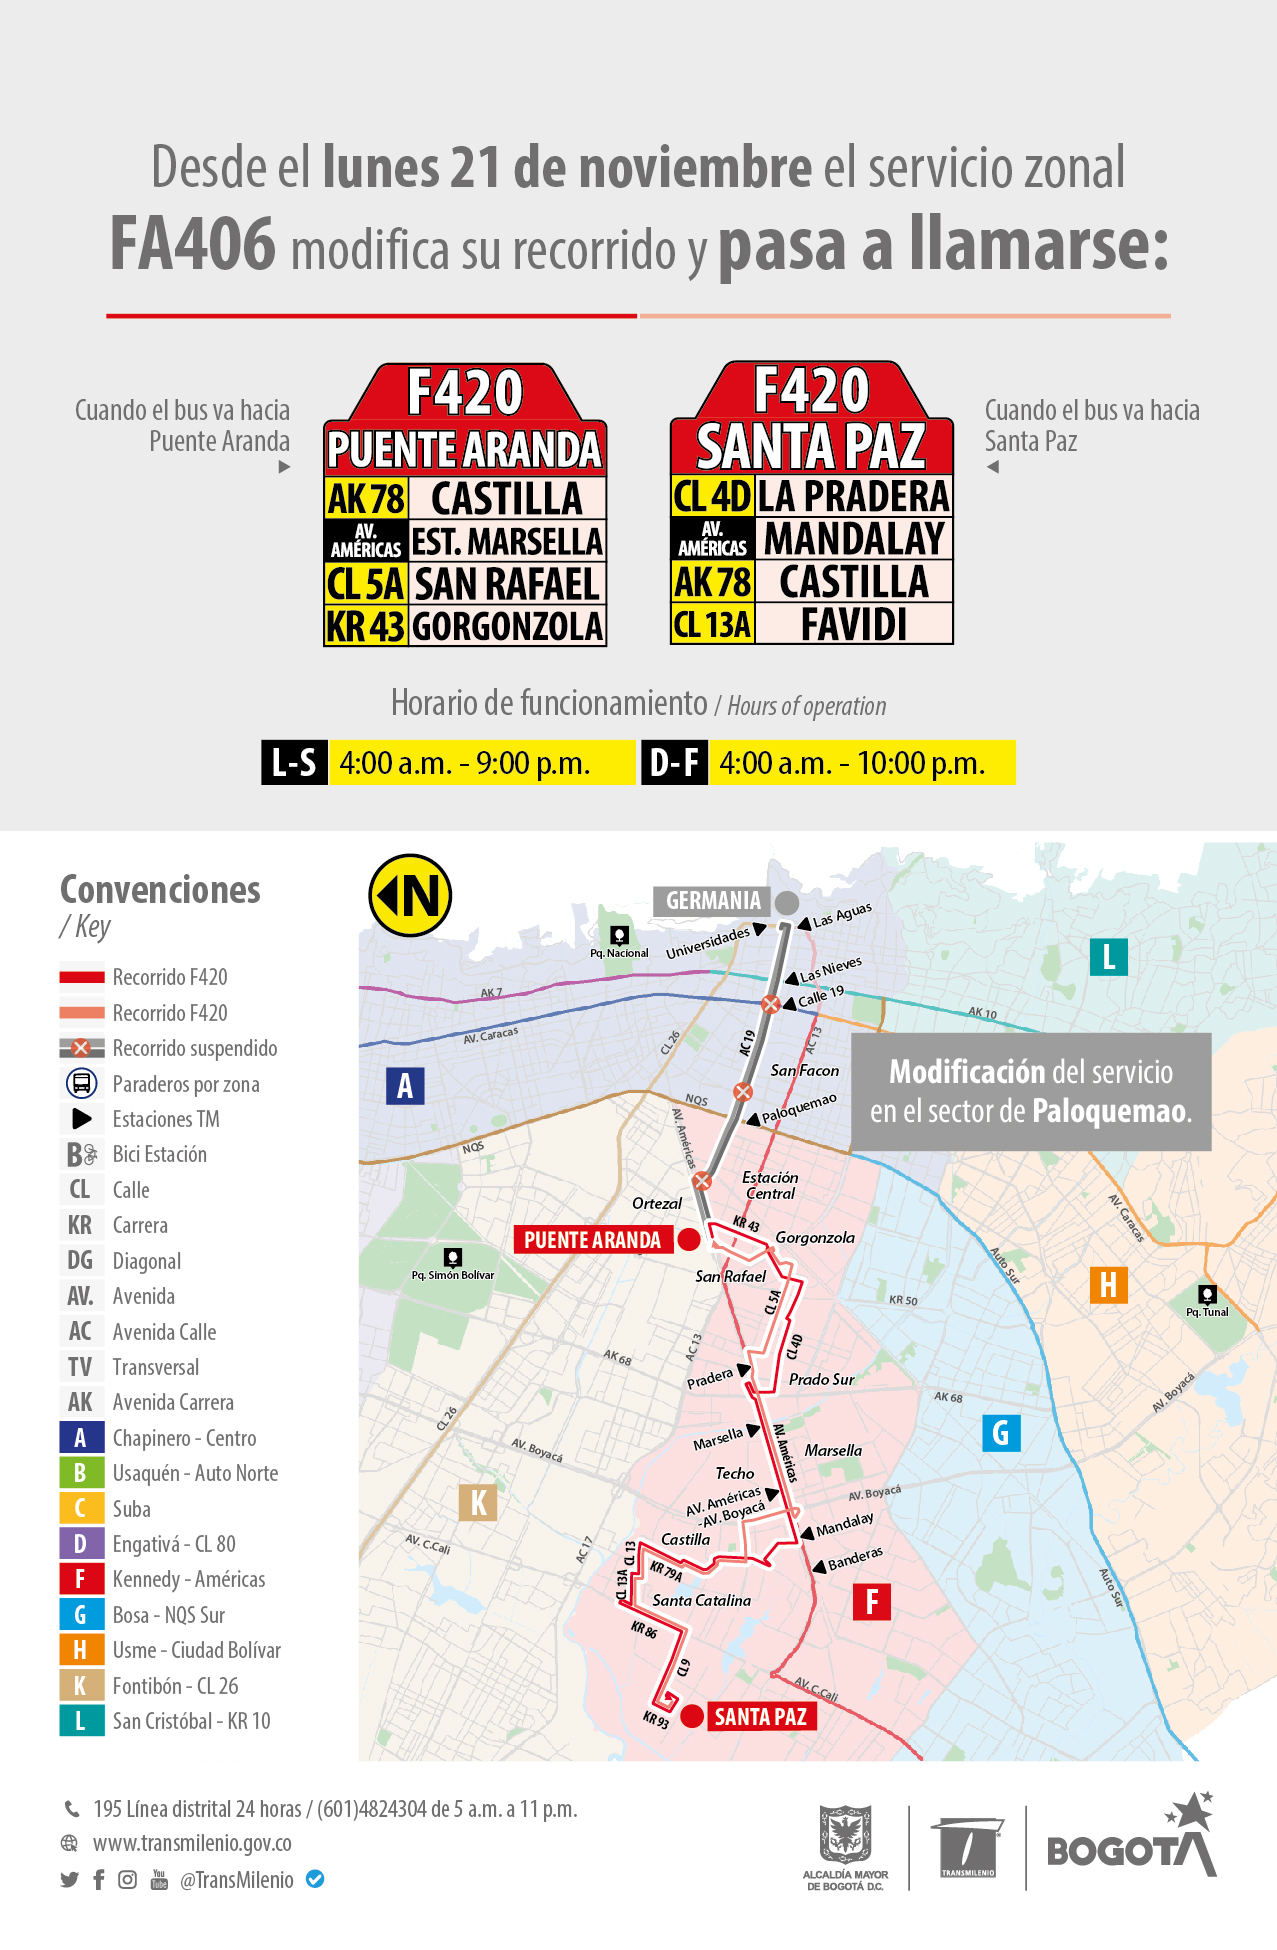 TransMilenio: La ruta zonal F406 - A406 modifica su recorrido y nombre